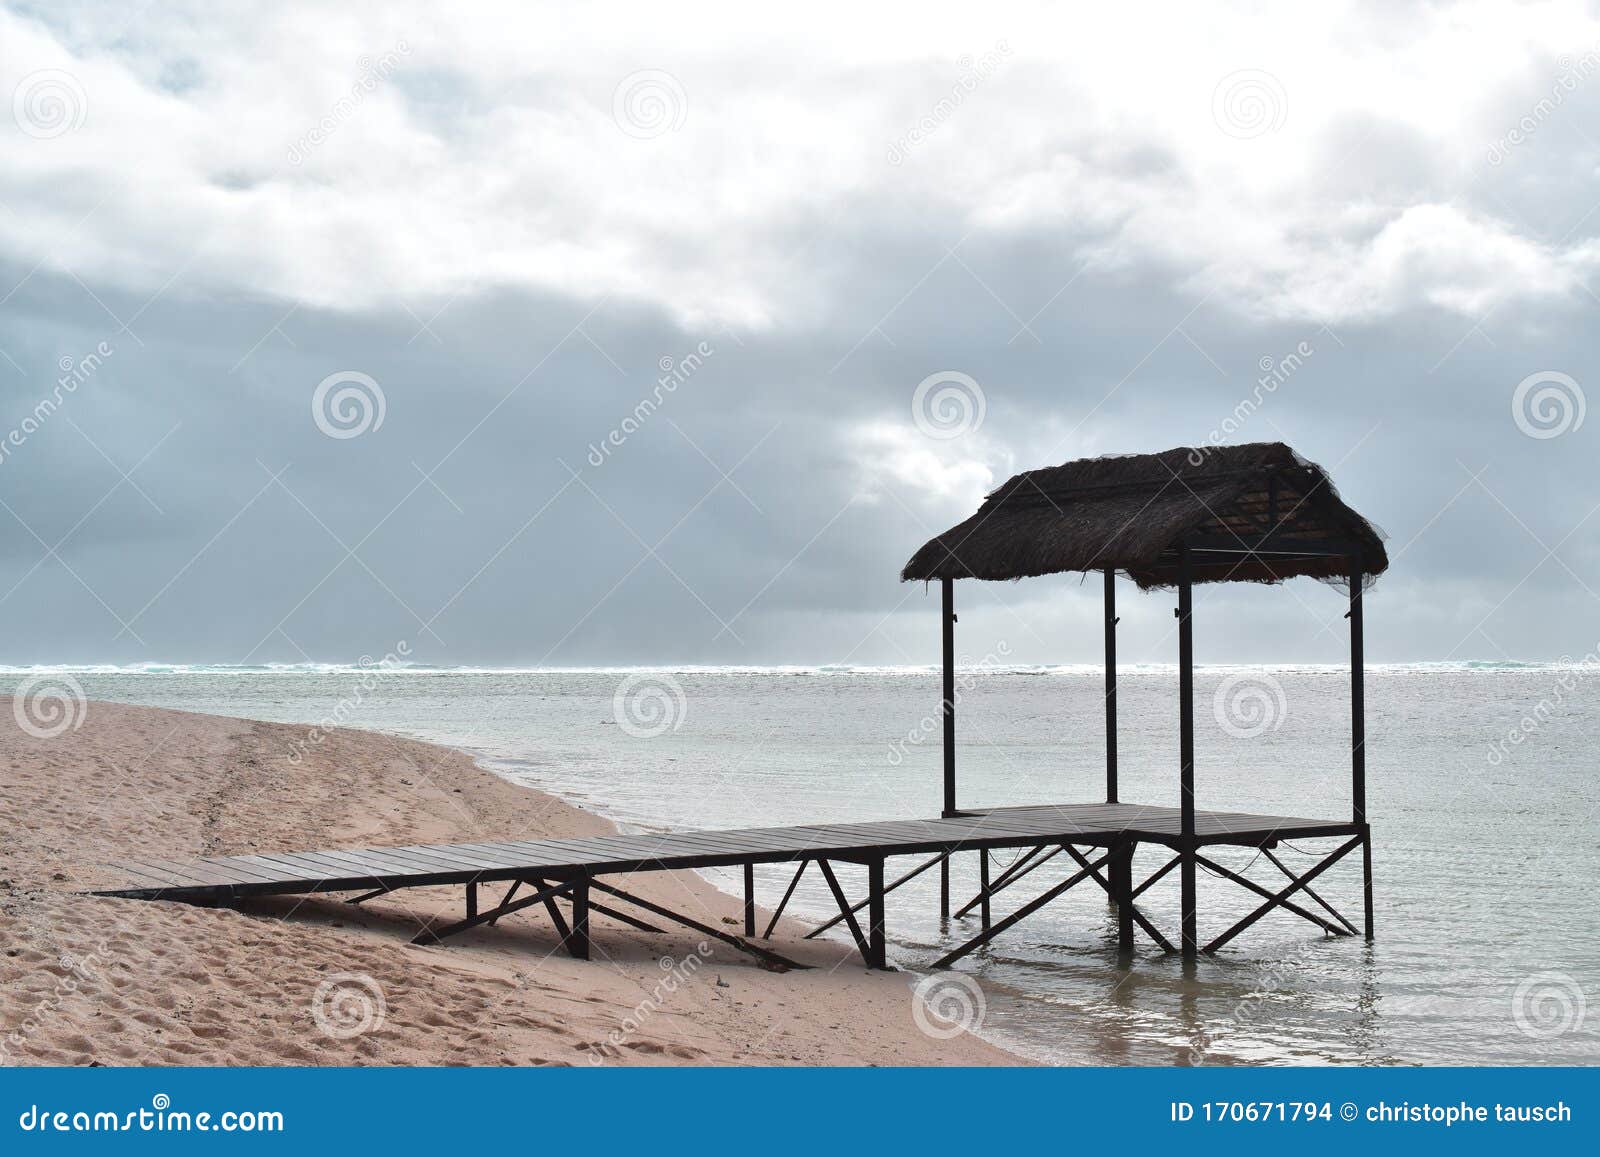 Бунгало На Пляже Фото